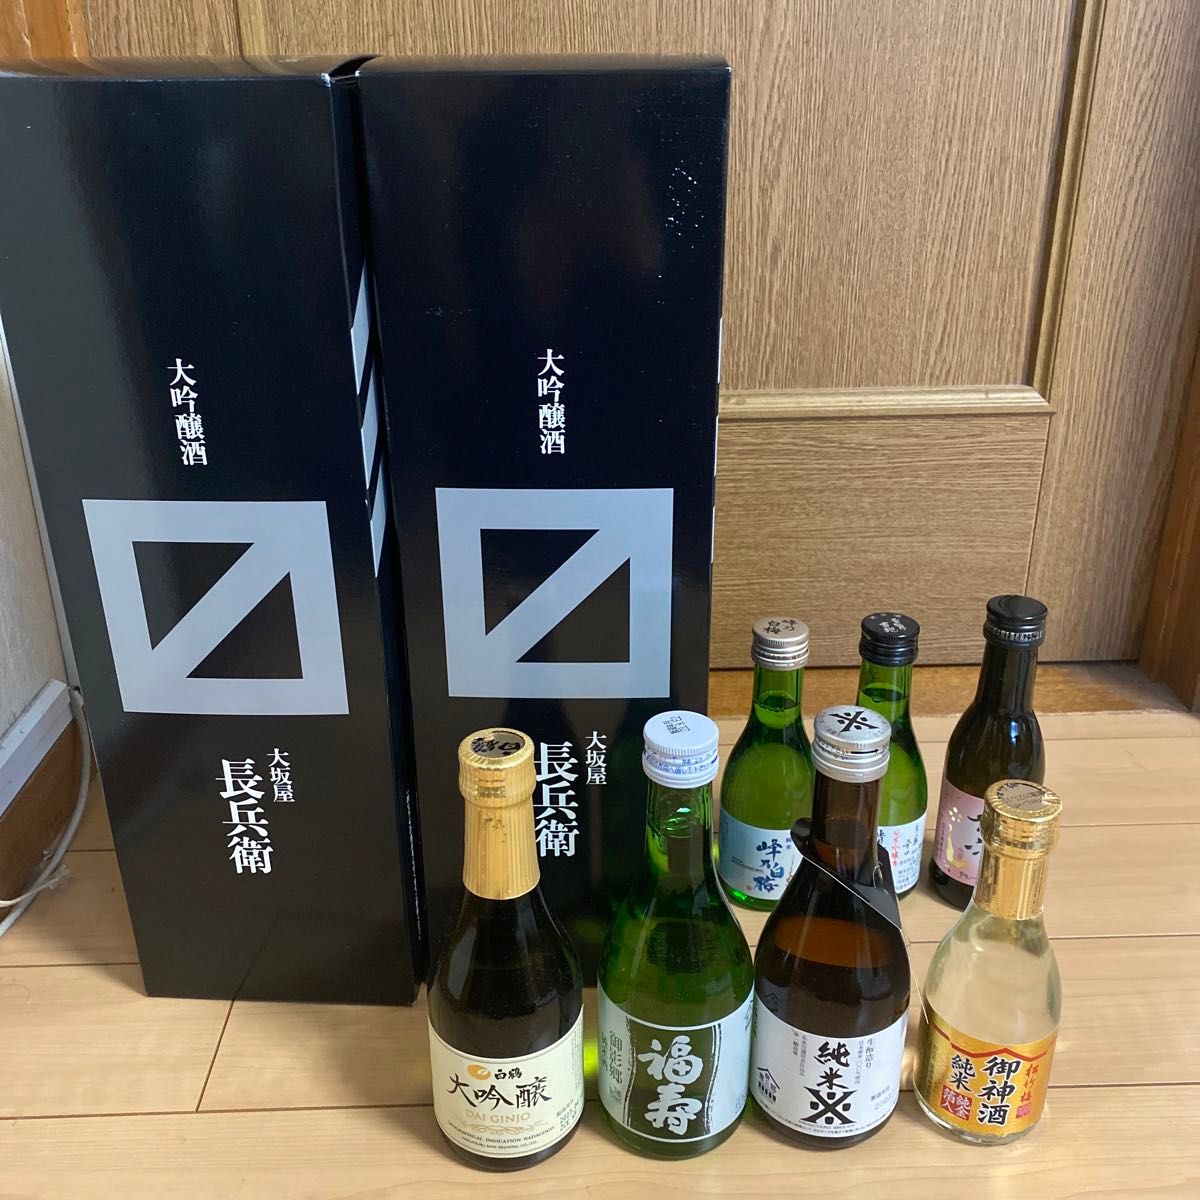 大坂屋長兵衛、他いろいろなお酒、9本！酒、日本酒、福寿、純米酒、大吟醸、吉兆